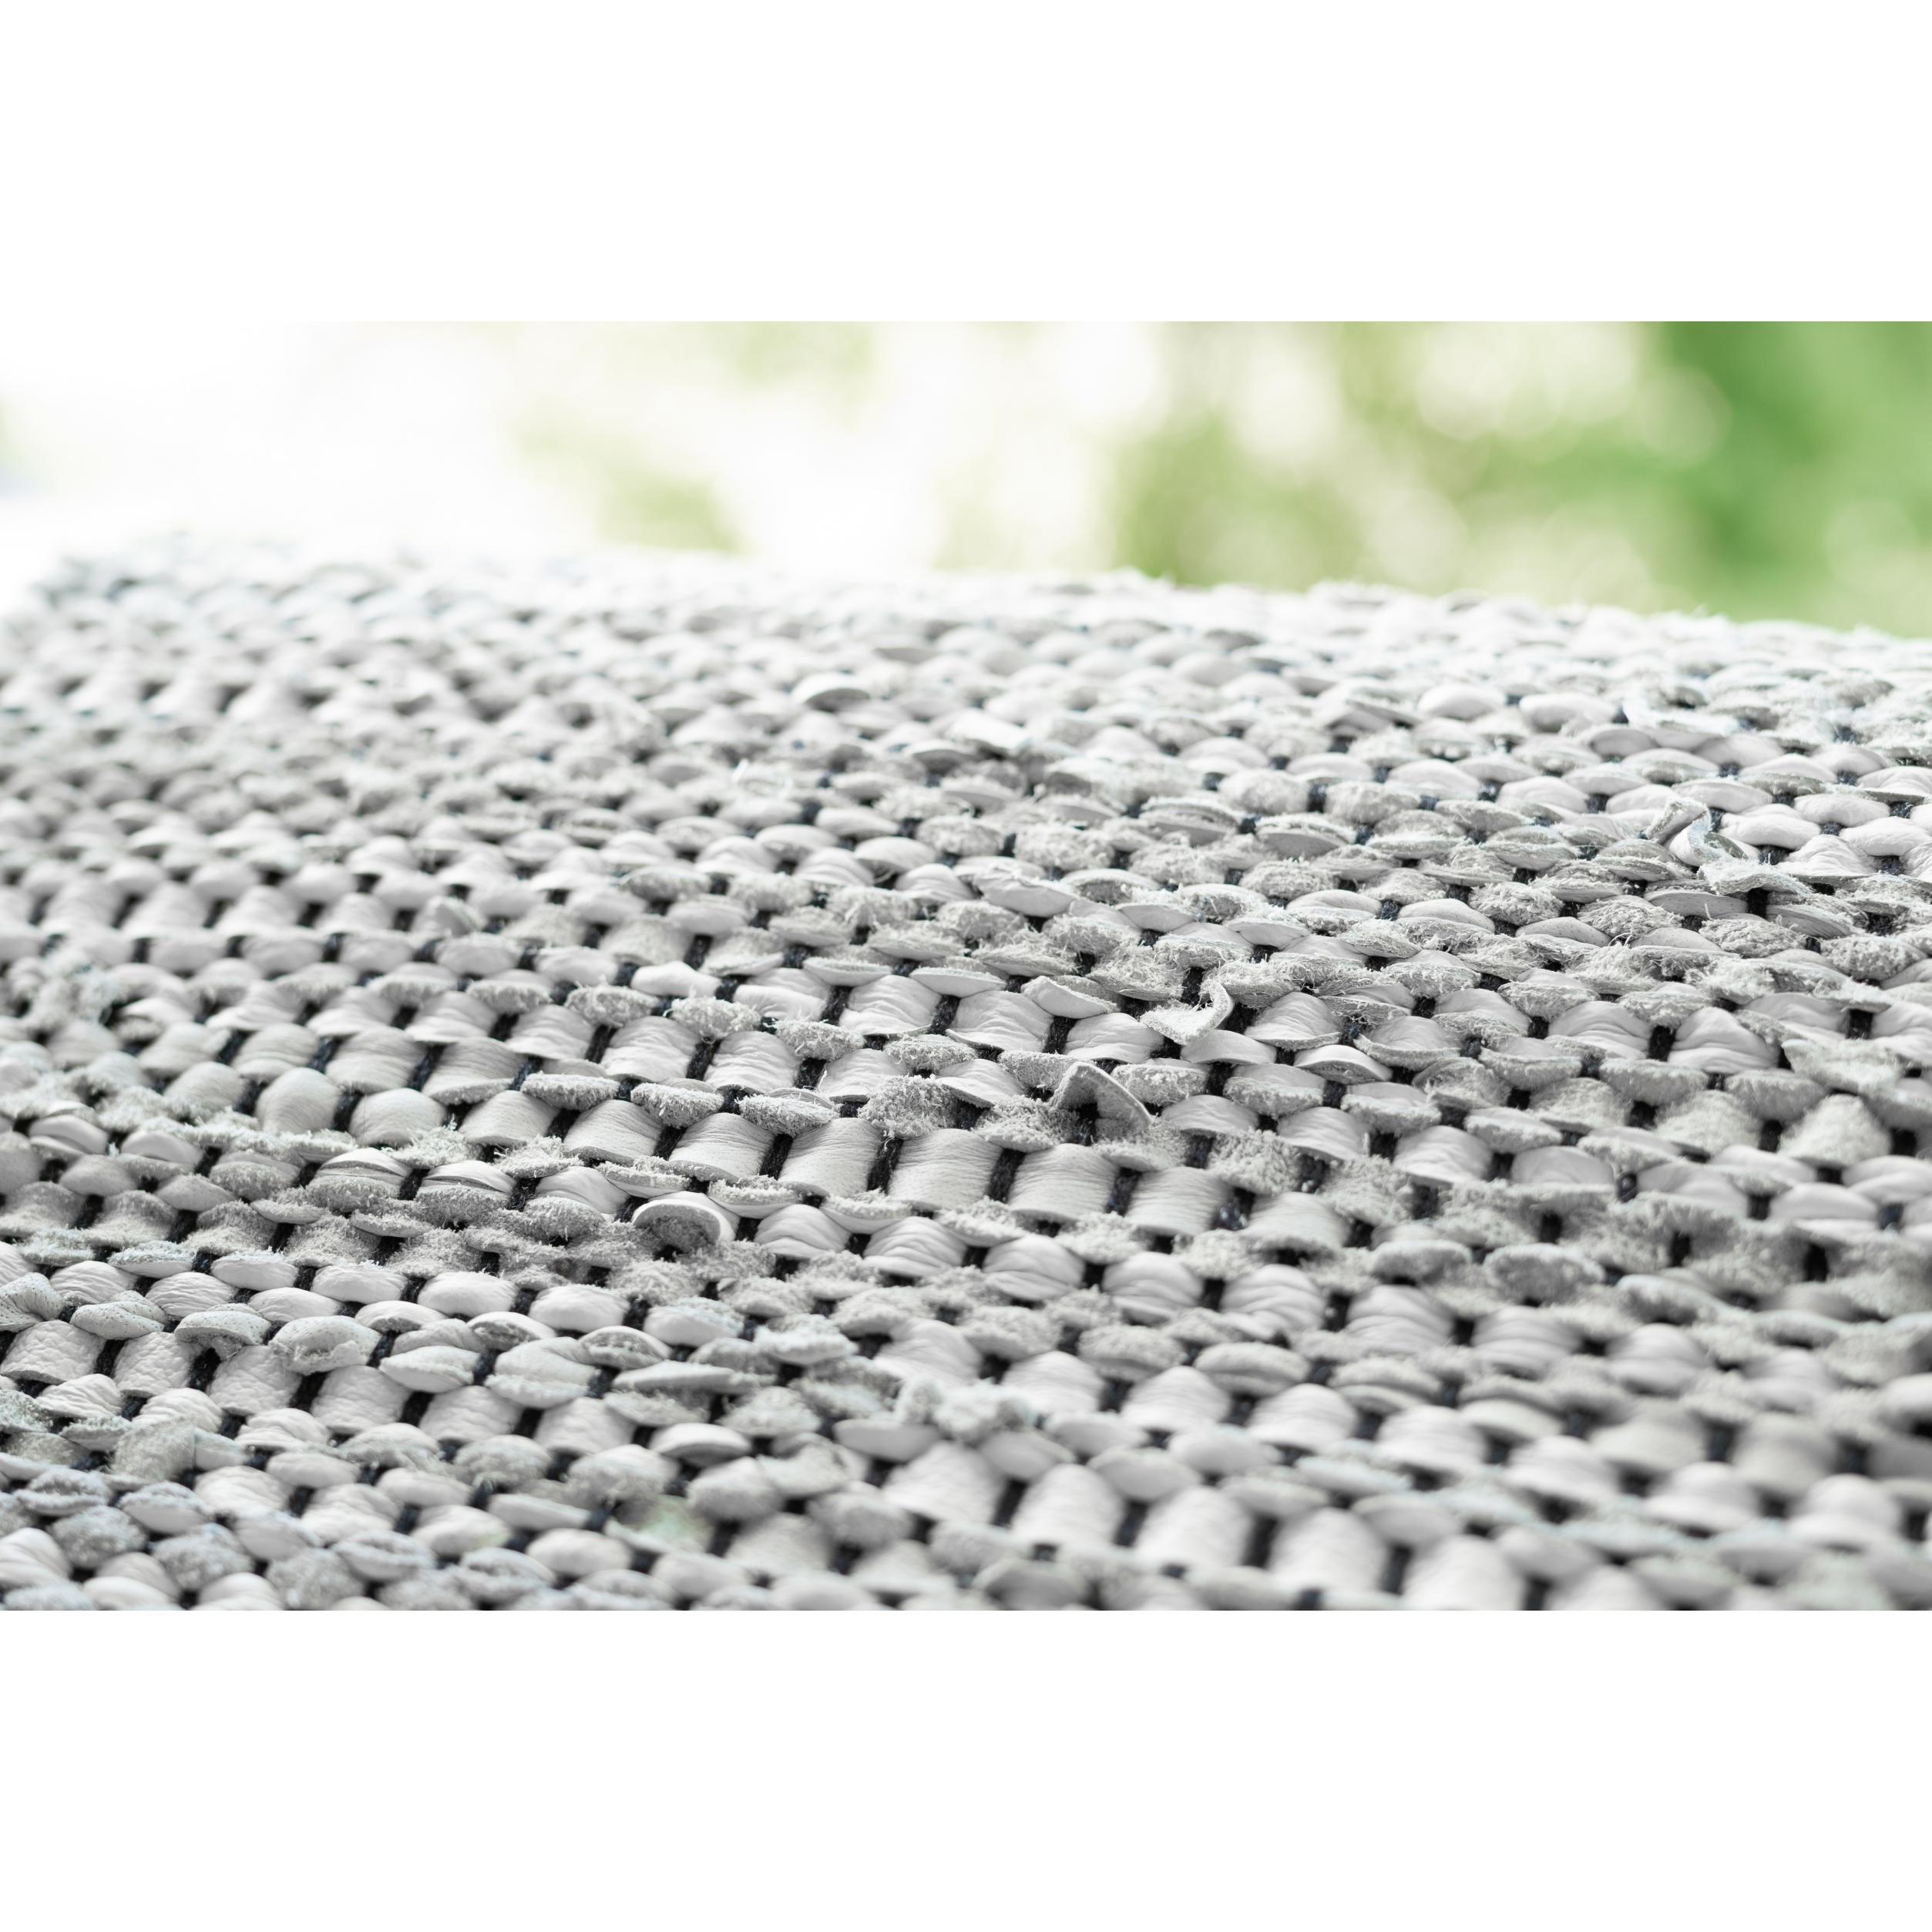 Rug Solid Tapis en cuir gris clair, 170 x 240 cm